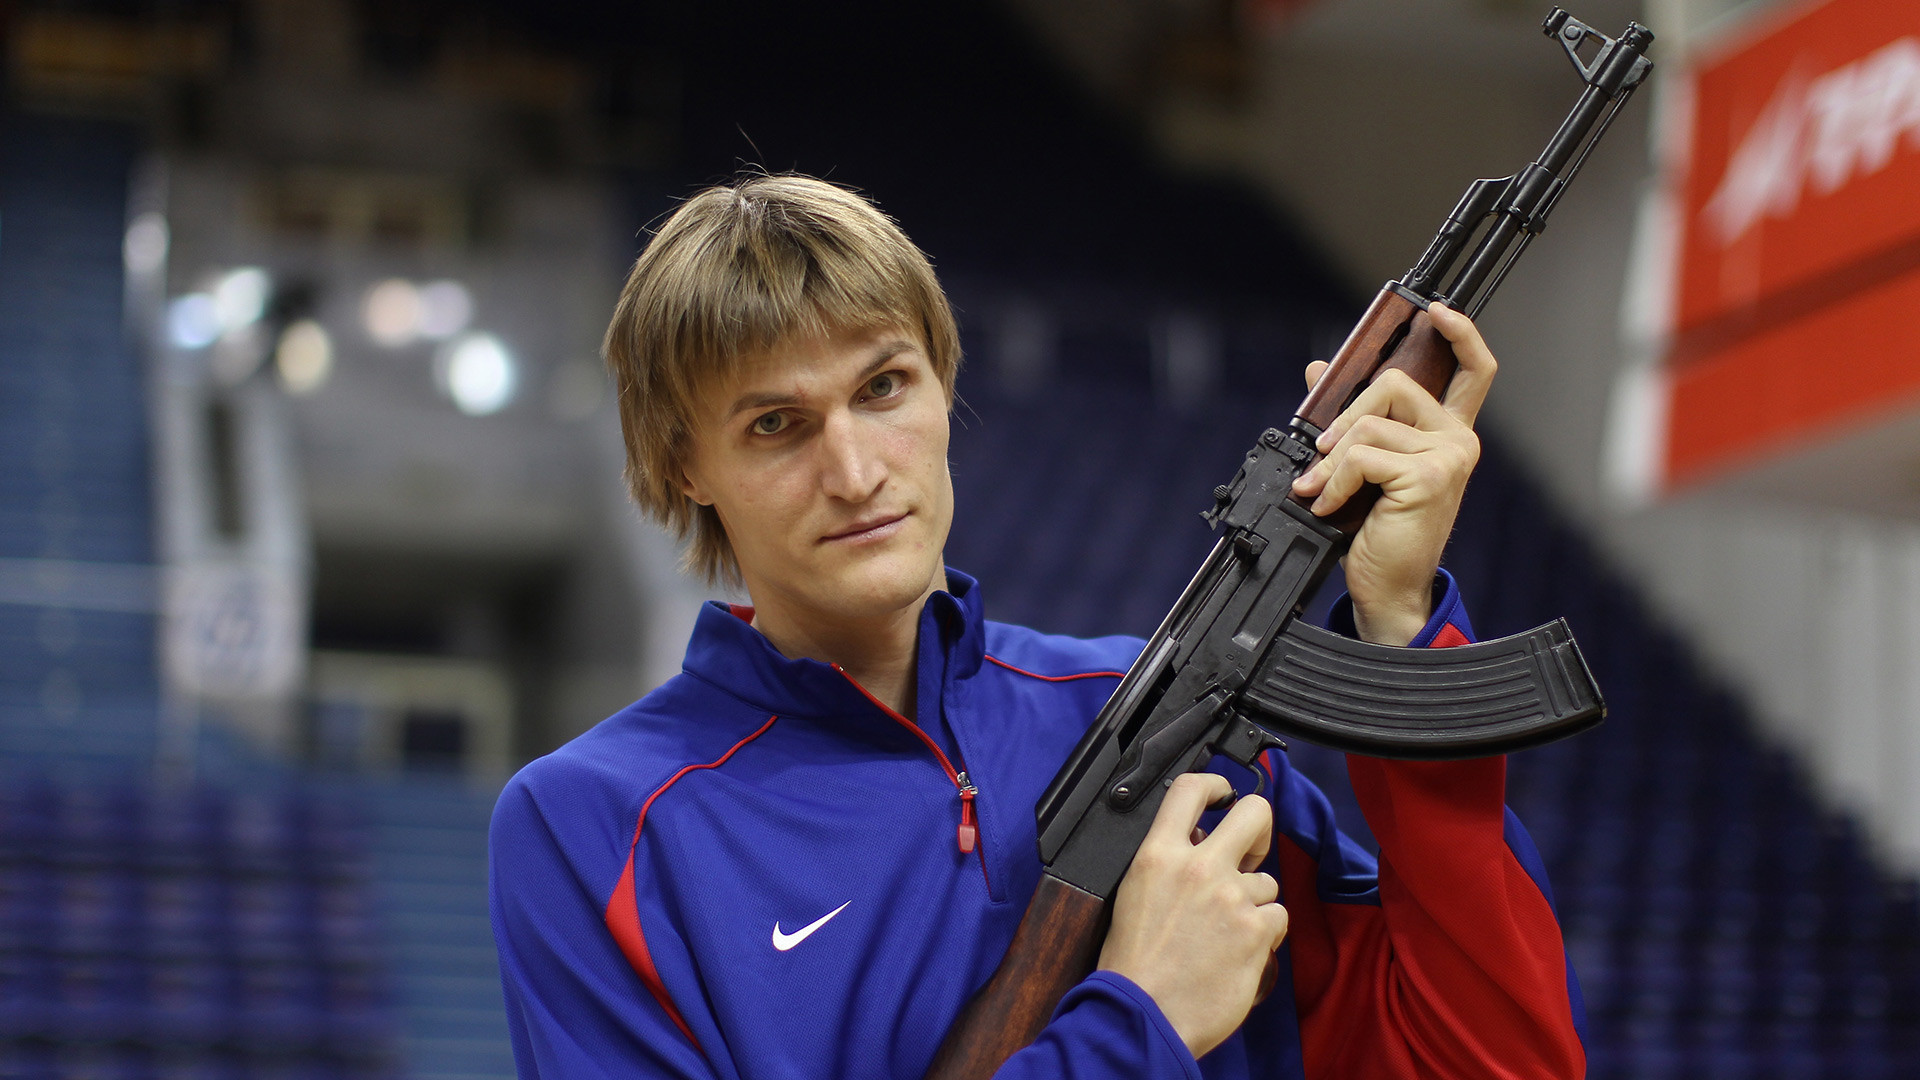 Košarkaška zvijezda Andrej Kiriljenko s kalašnjikovom na snimanju za svoj novi tim.